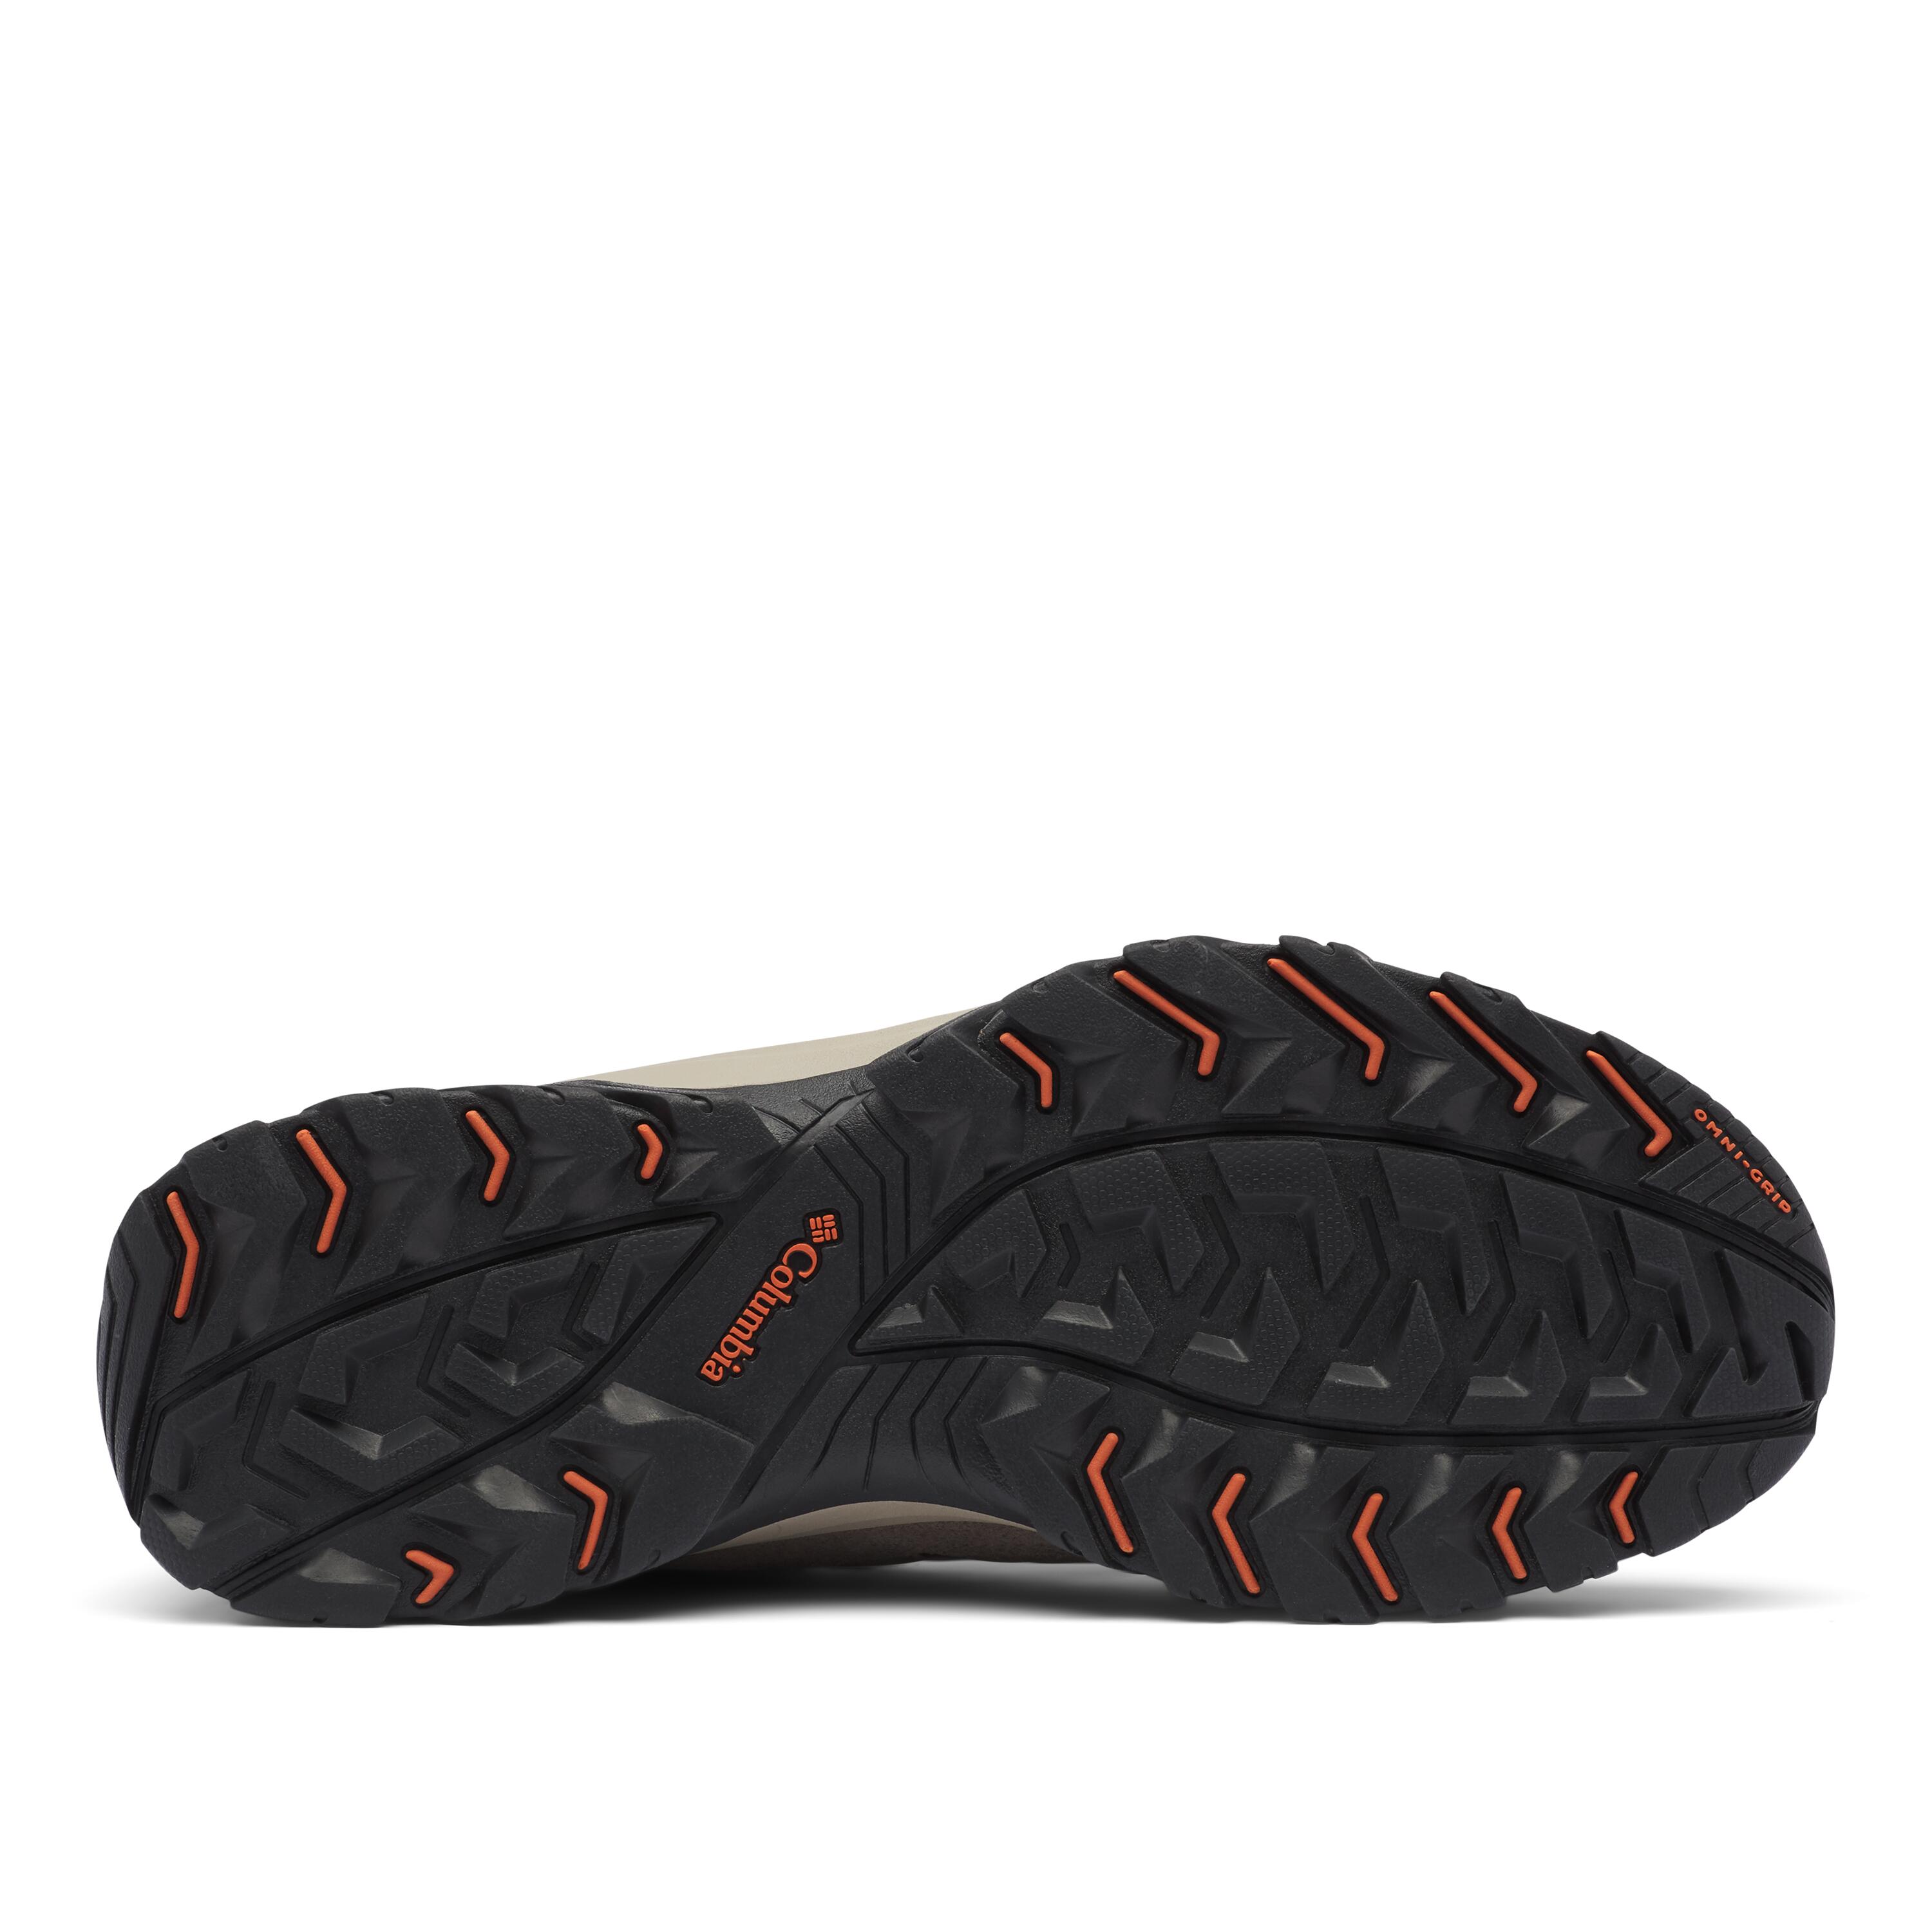 Men's waterproof walking shoes - Columbia Redmond - Brown 3/4